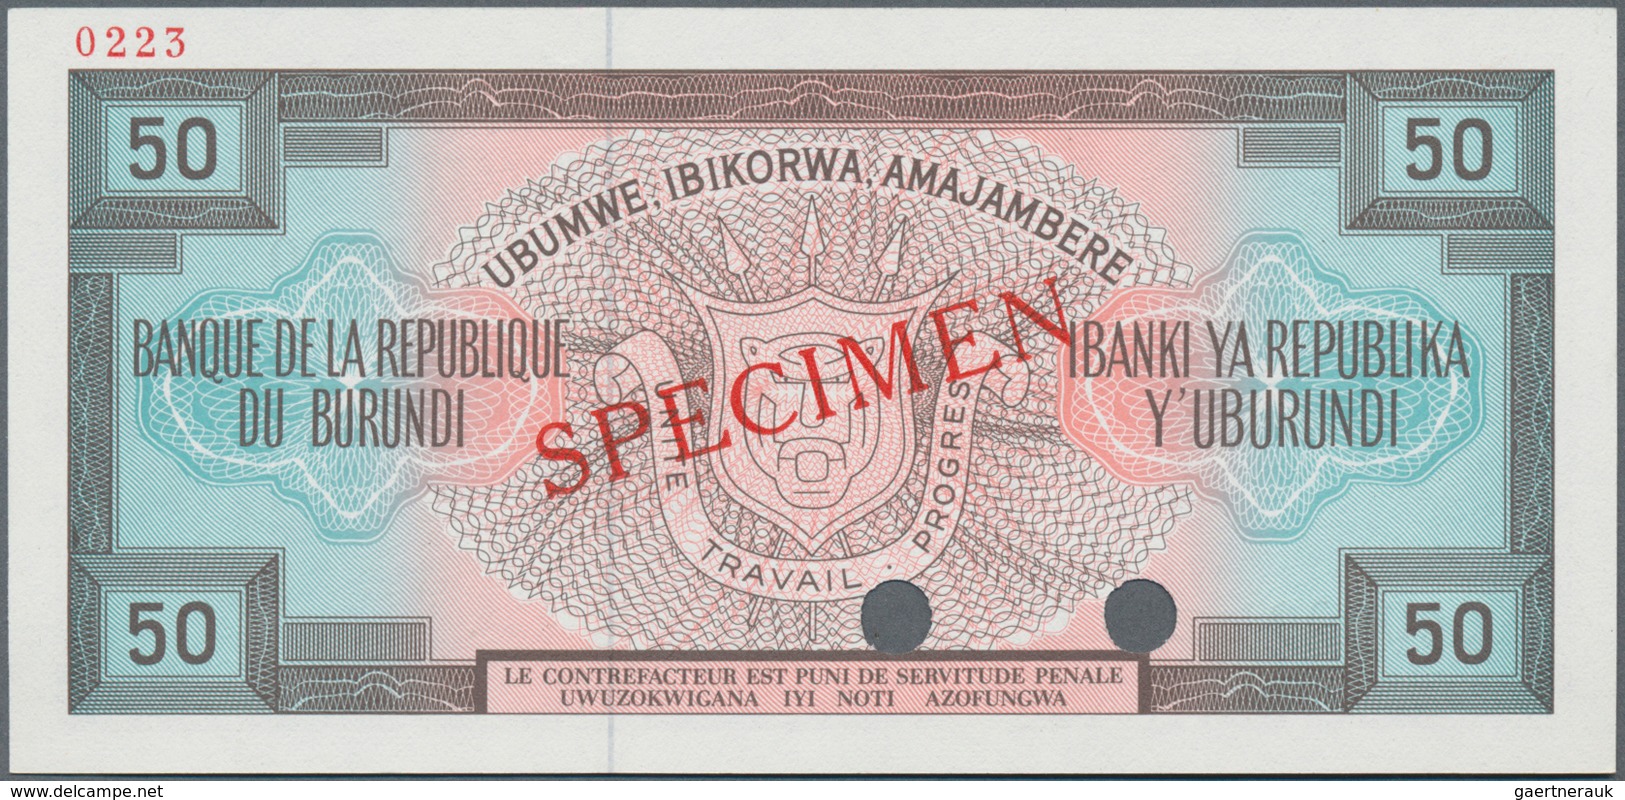 Burundi:  Banque De La République Du Burundi 50 Francs 1977 SPECIMEN, P.28s With Punch Hole Cancella - Burundi